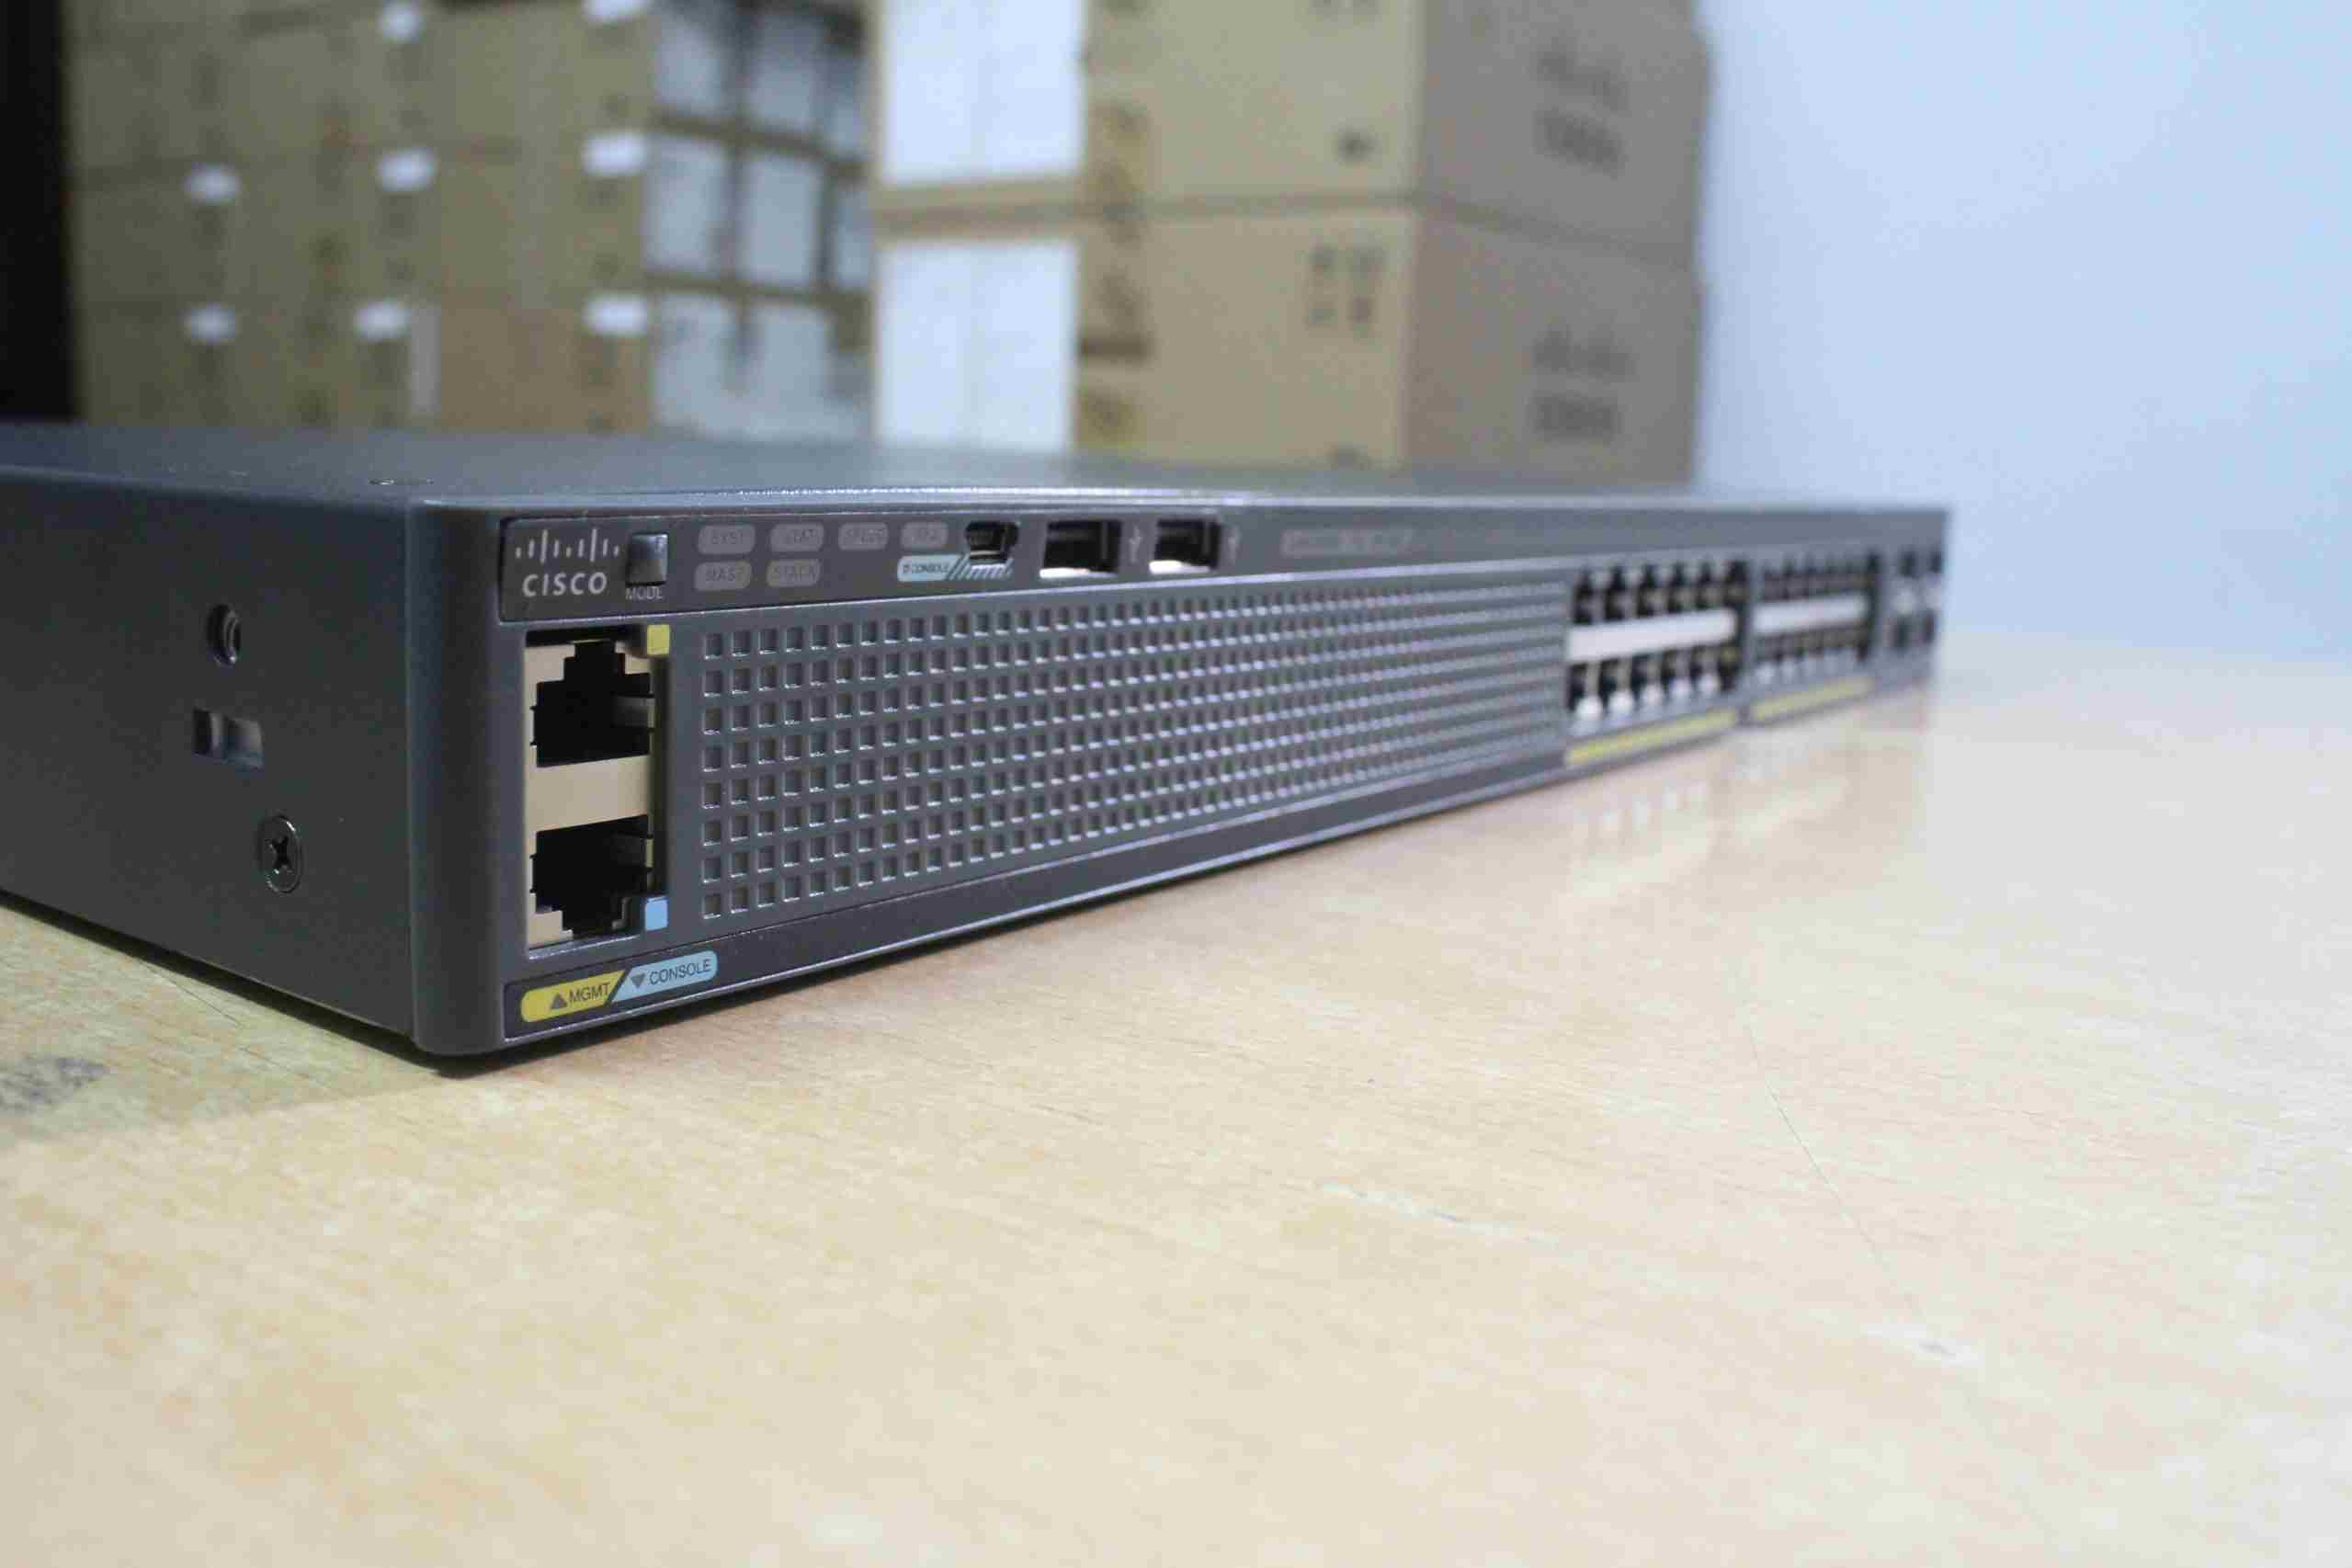 Phân phối switch Cisco 2960 24 ports chính hãng